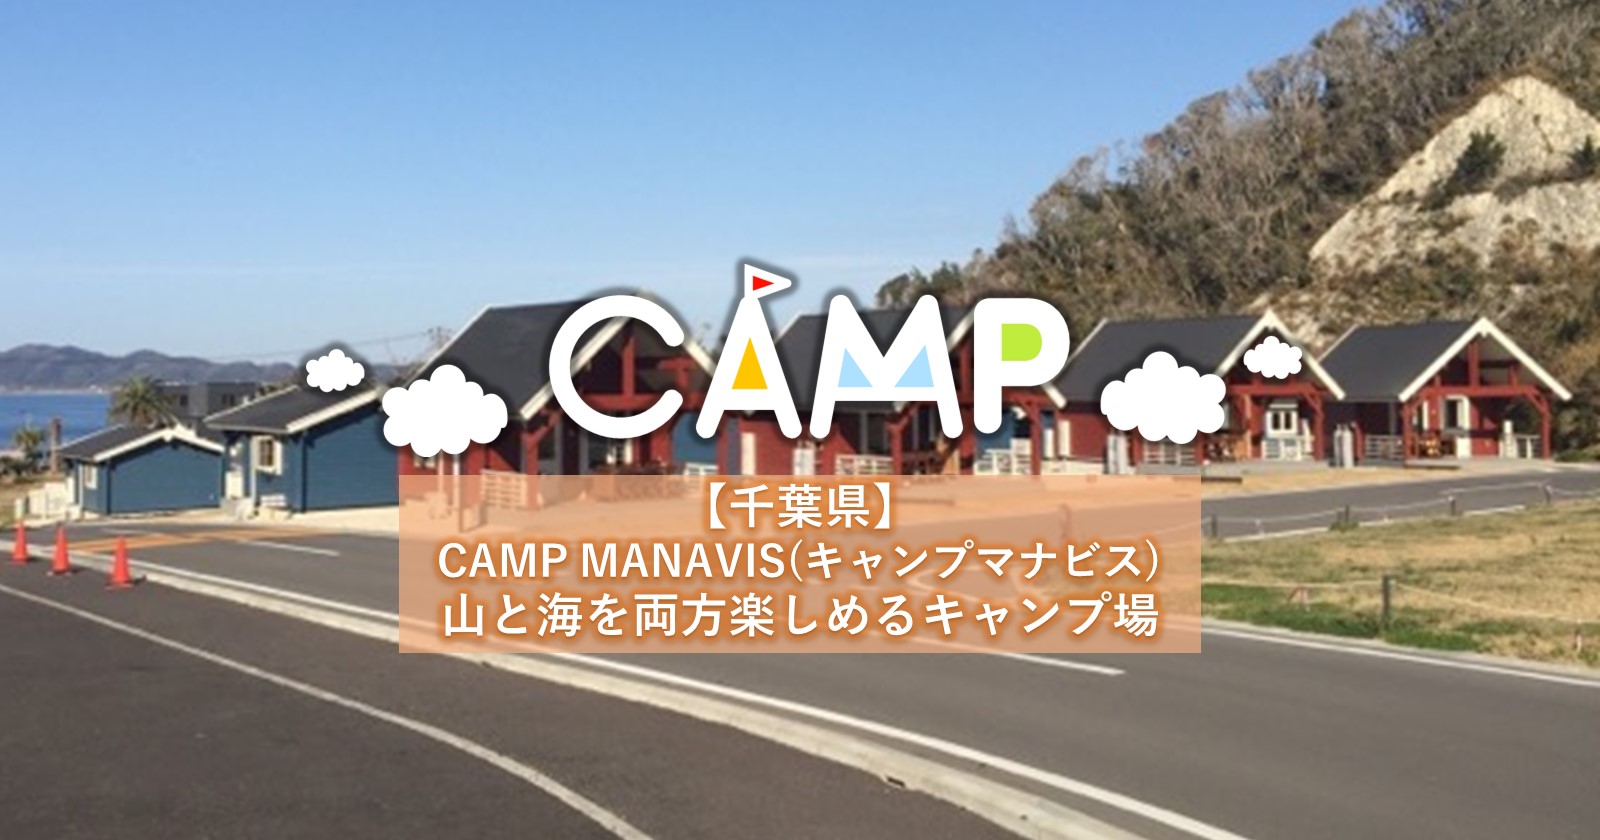 キャンプ マナビス